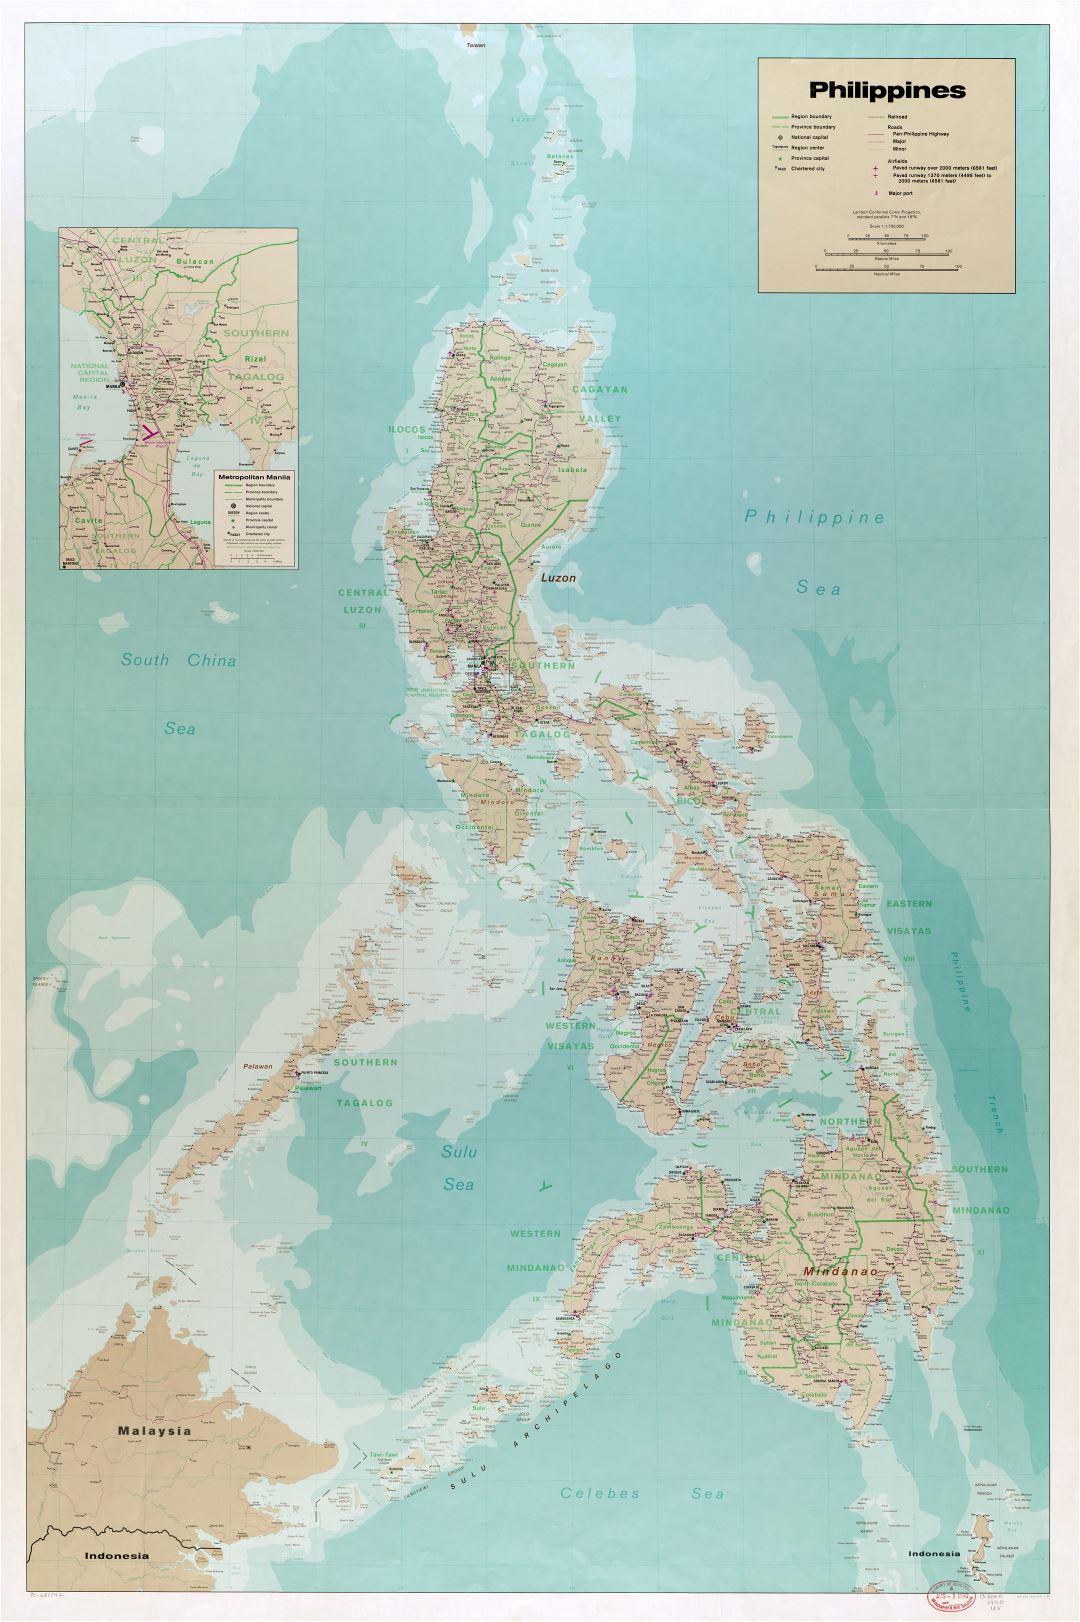 Крупномасштабная детальная политическая и административная карта Филиппин с дорогами, железными дорогами, всеми городами, аэропортами, портами и другими пометками - 1990